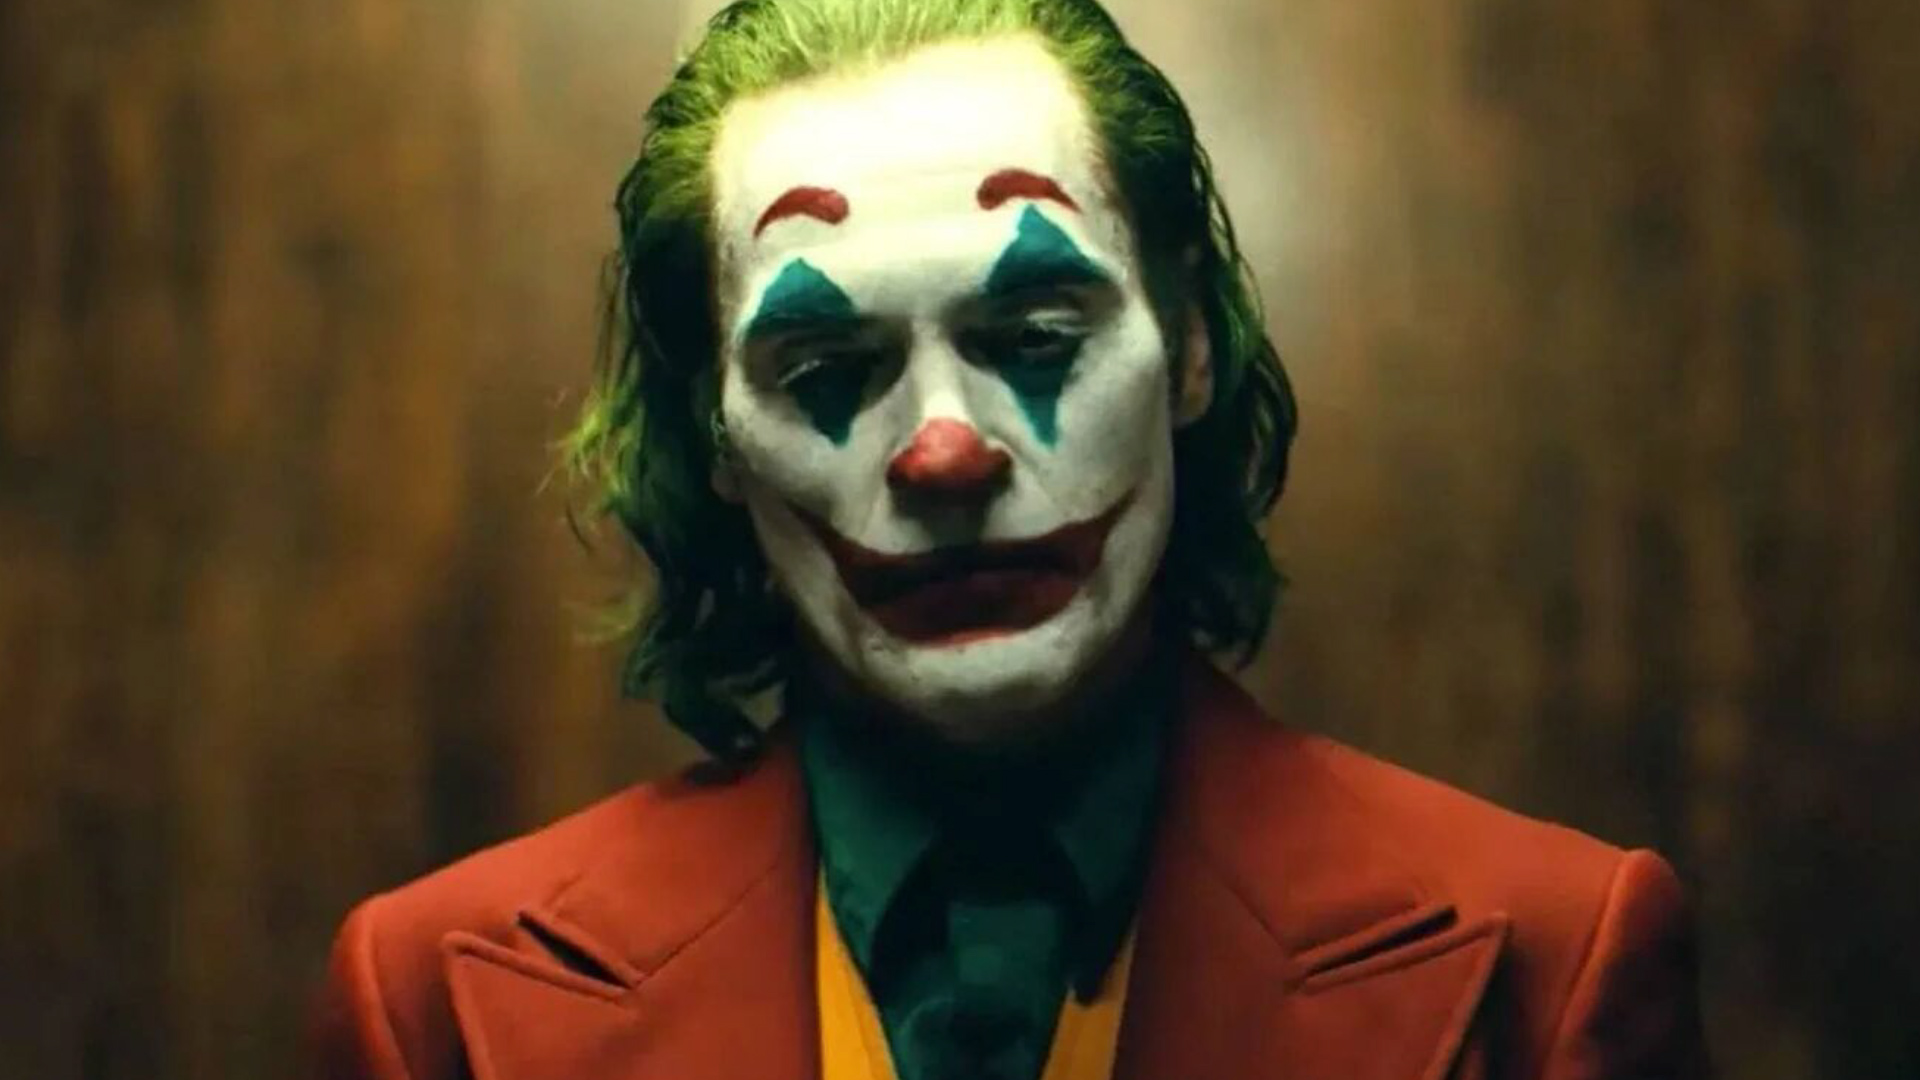 Por su interpretación del Joker, el histrión de origen puertorriqueño ganó el Oscar a "Mejor Actor" Foto: Instagram/@Joker